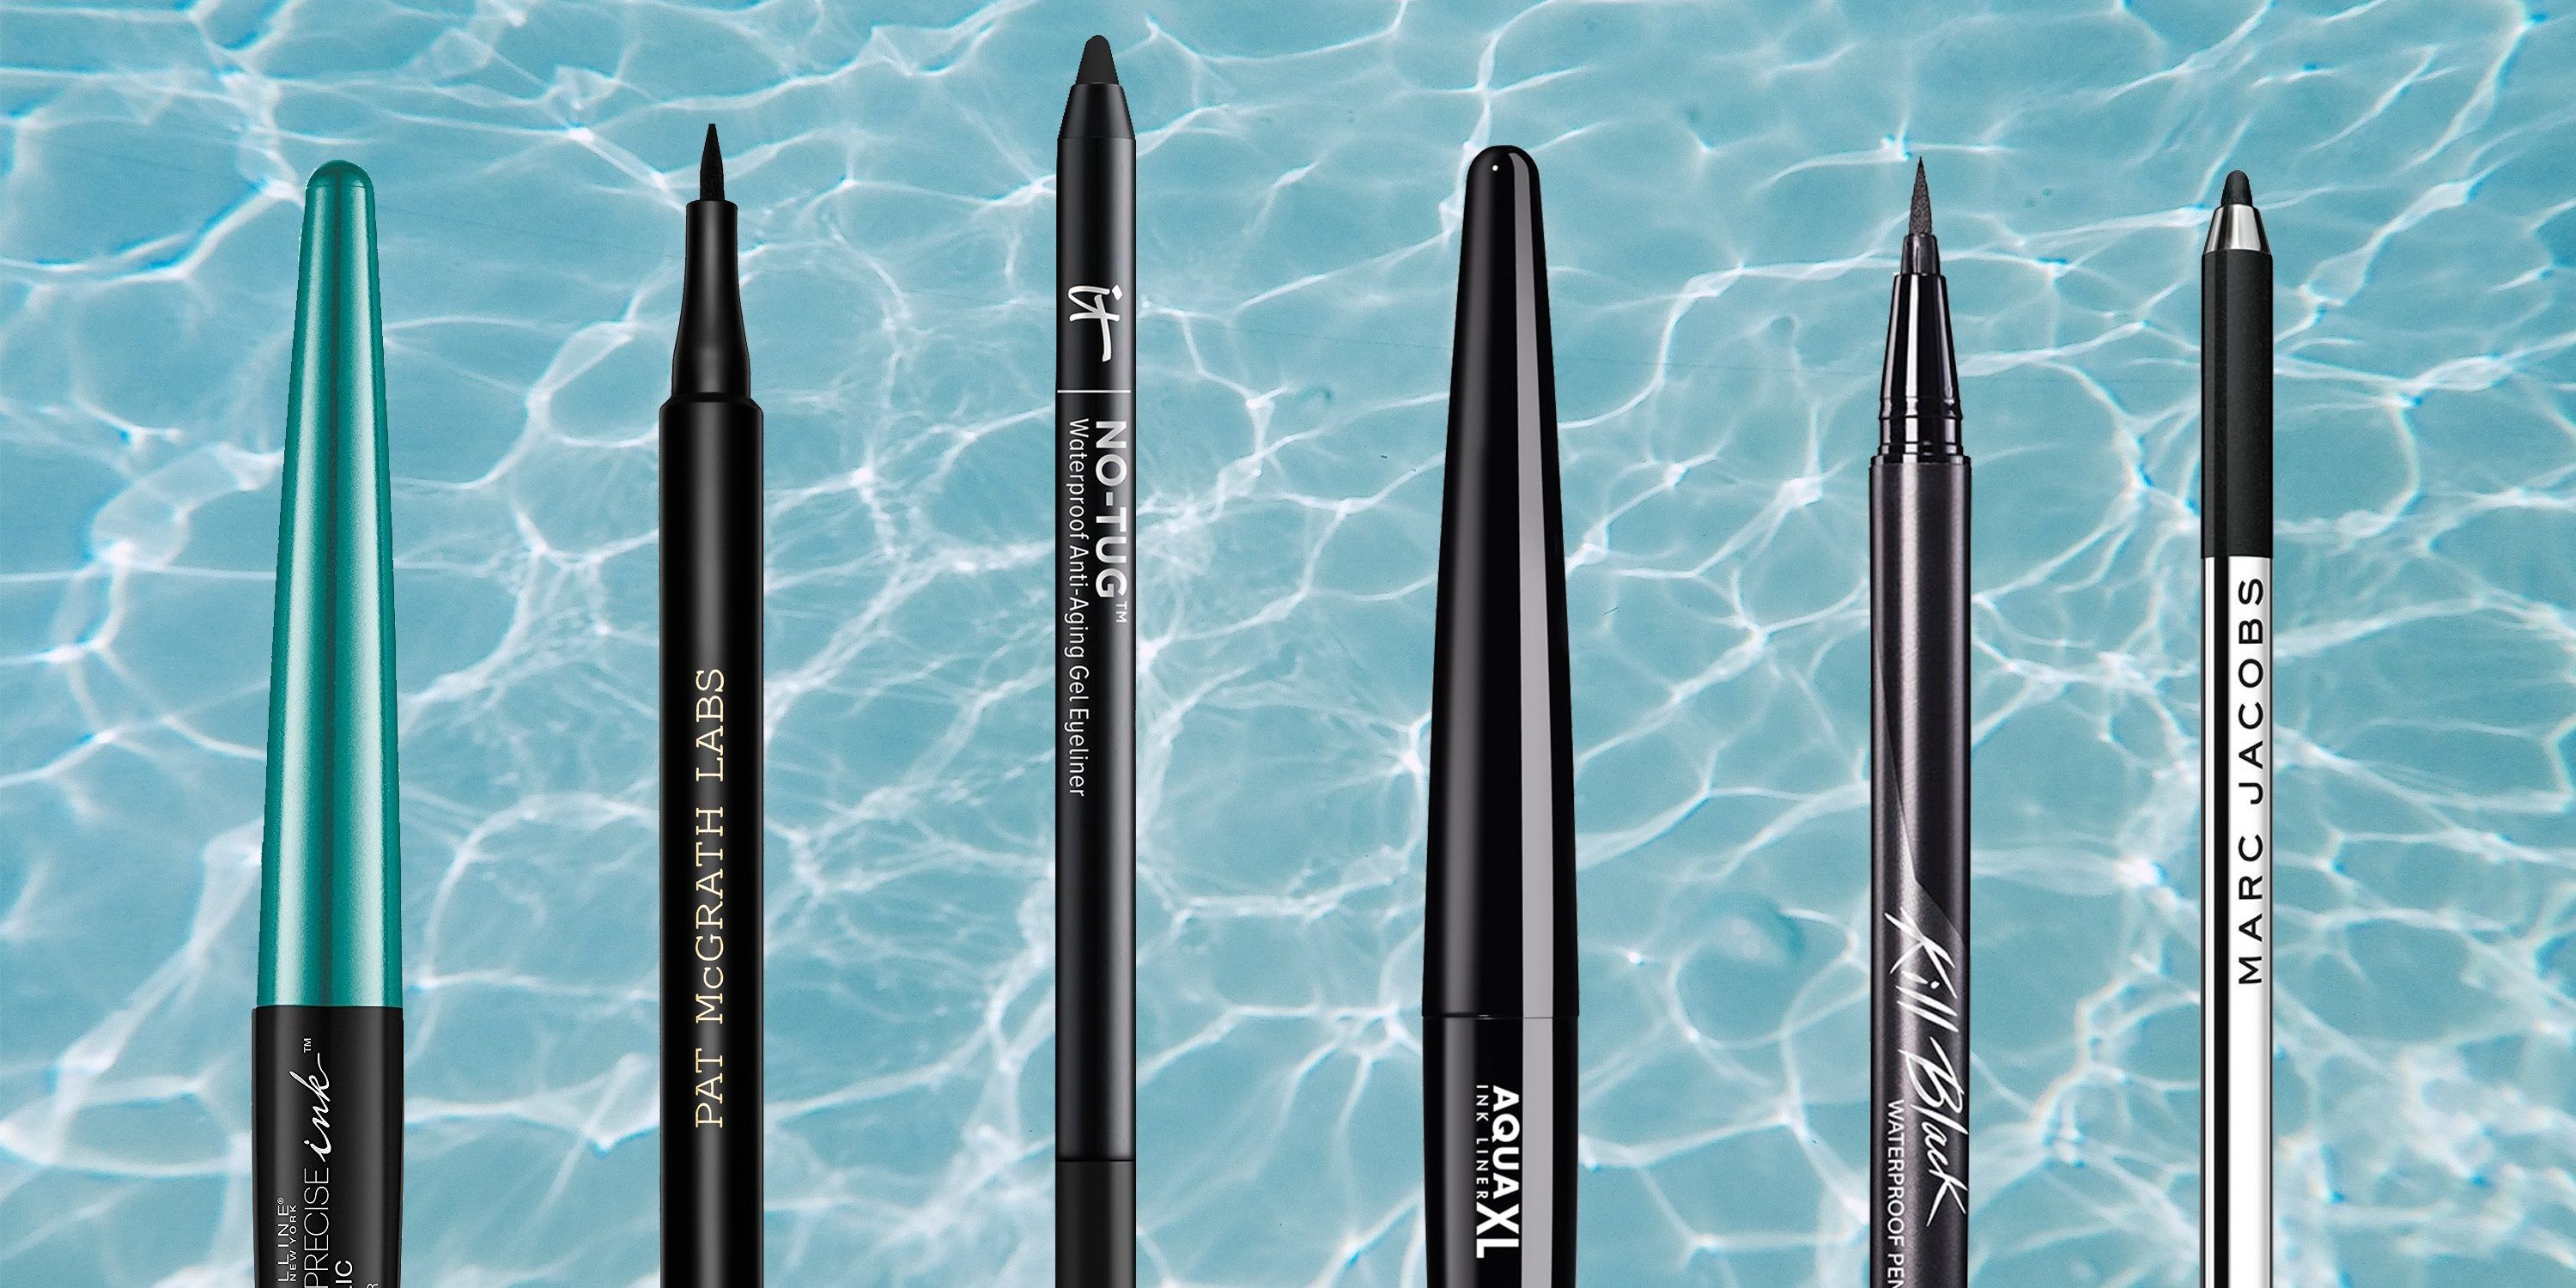 Waterproof eyeliner. RPK Waterproof Eyeliner Pencil. Best Matte Black Liquid Eyeliner. Waterproof Eyeliner for swimming.